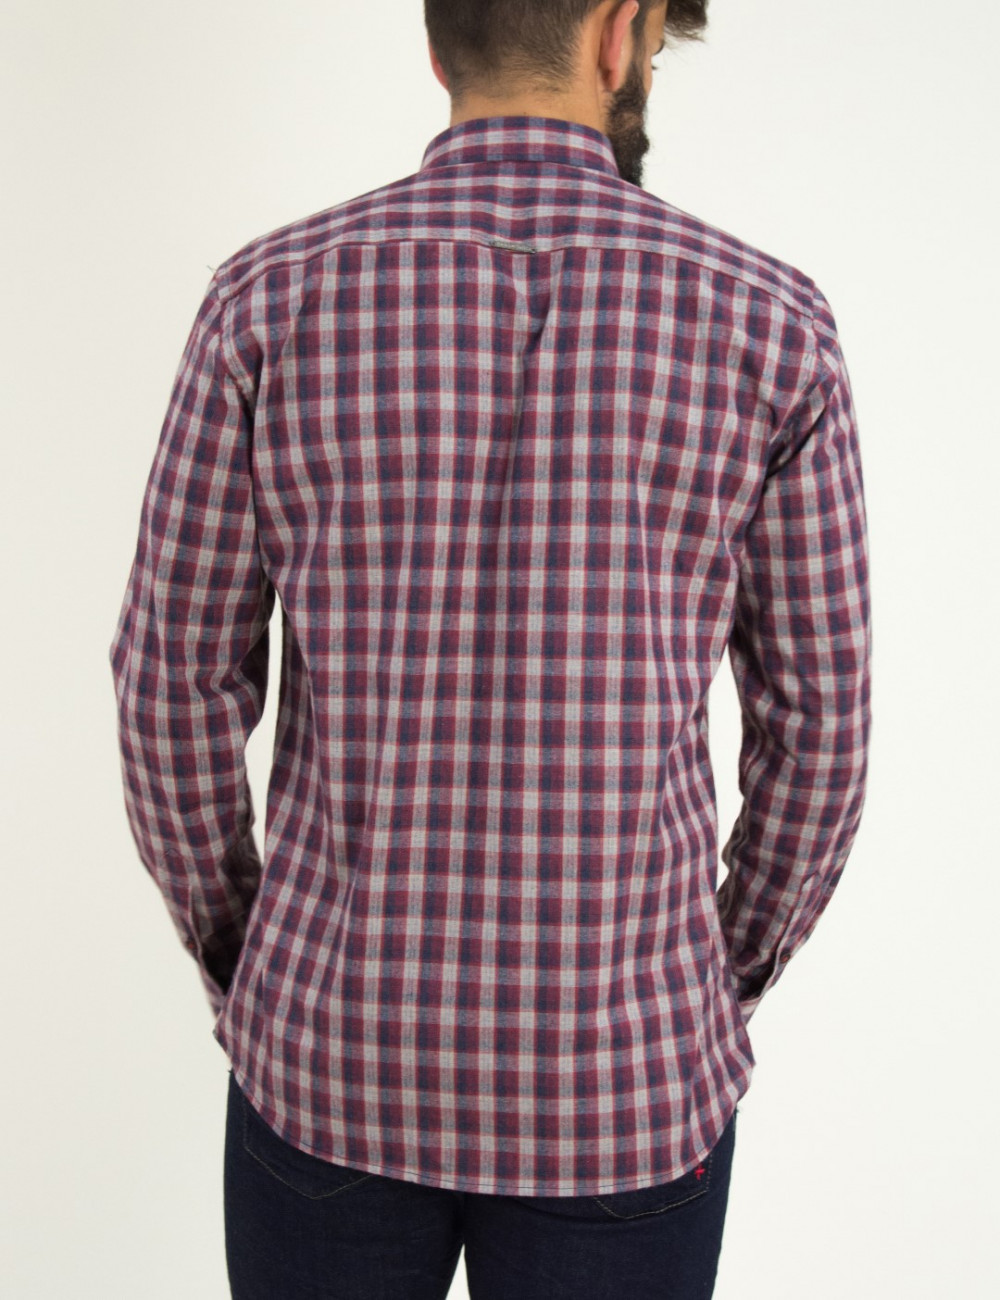 Ανδρικό κόκκινο καρό πουκάμισο με τσεπάκια Ben Tailor 0091